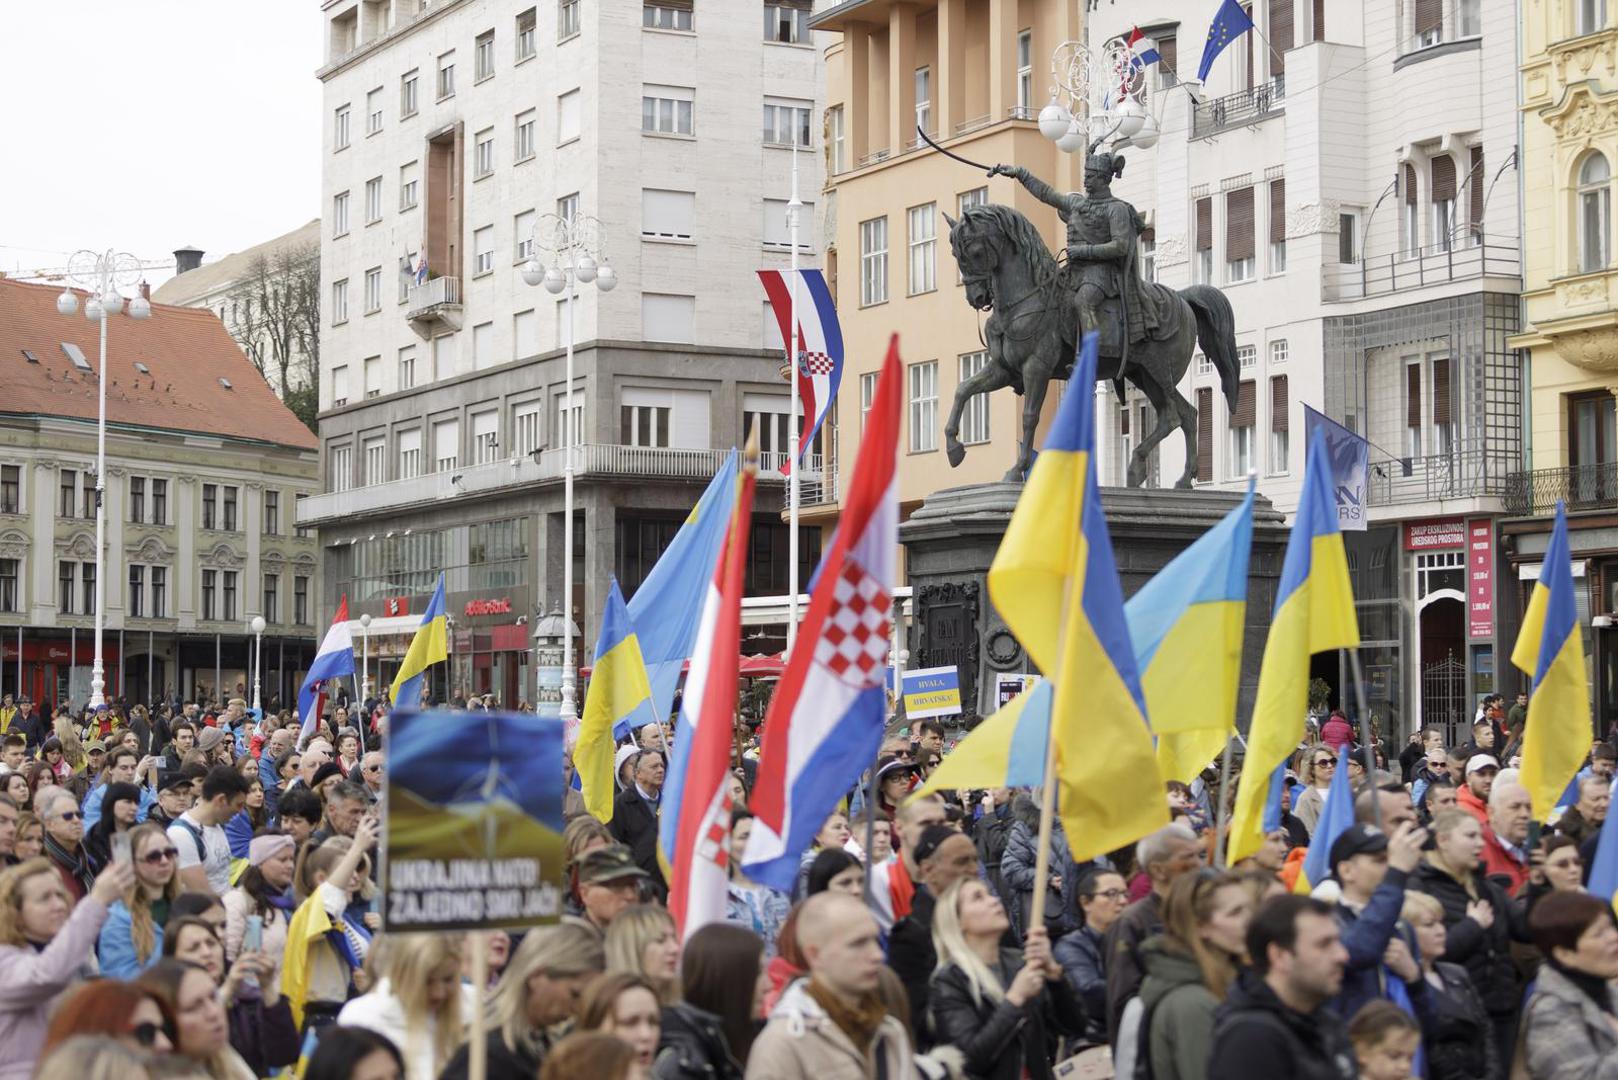 Braneći se od ruske agresije, Ukrajina brani slobodu i demokraciju zapadnih zemalja.